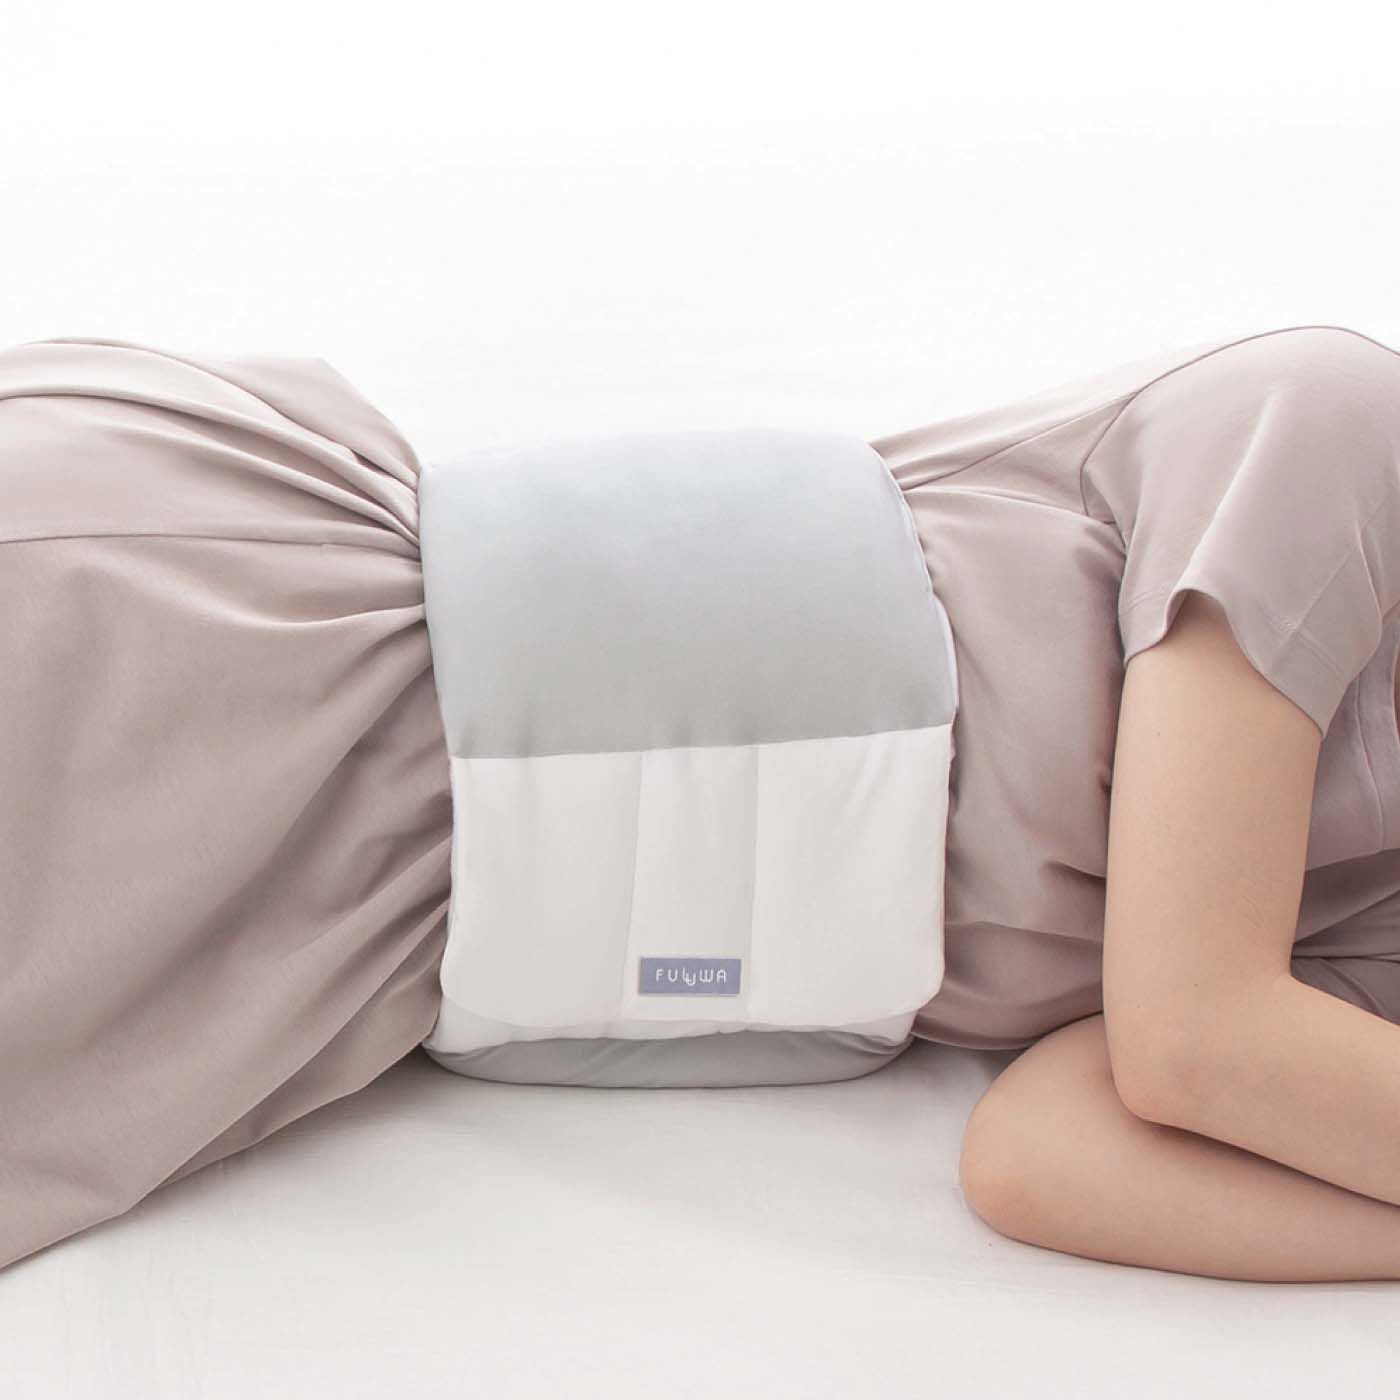 フェリシモの雑貨 Kraso|寝ている間も腰をふんわりサポートお医者さんの腰futon